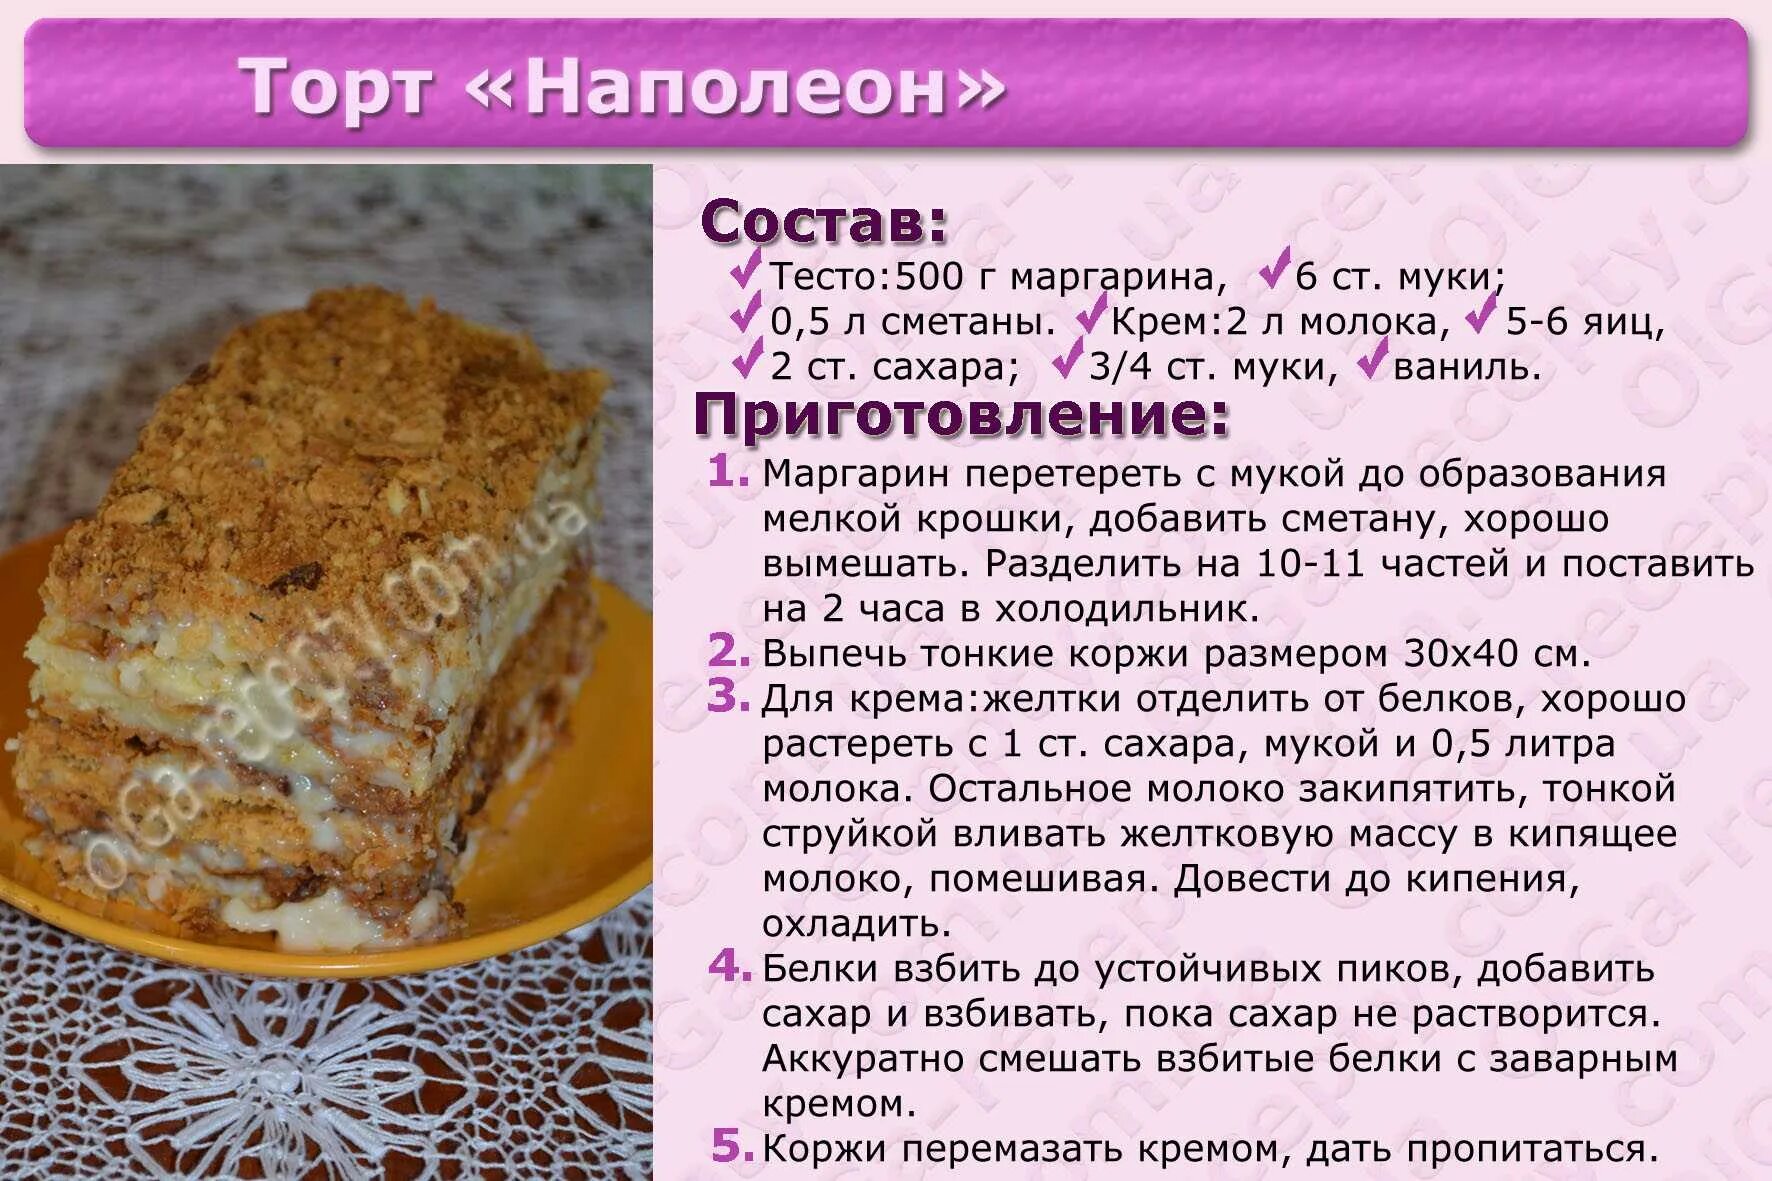 Рецепты без картинки. Рецепты тортов с описанием. Картинки с рецептами тортов. Несложные рецепты тортов с картинкой. Рецепт торта красивый простой.